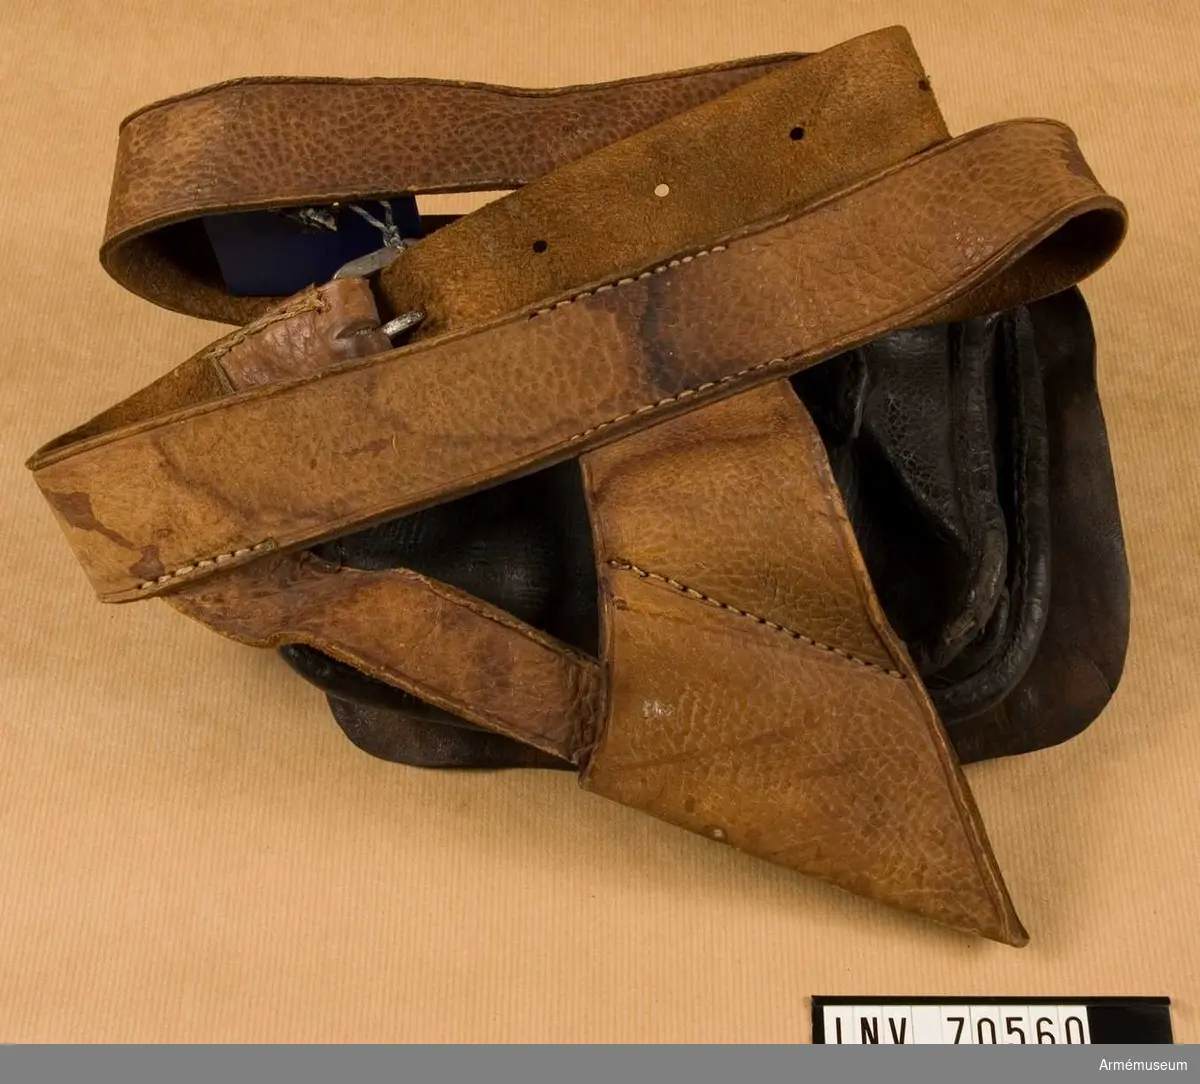 Grupp C:II.
Livgehäng med patronkök och hylsa för huggare för fartygsbesättning 1800-1850.